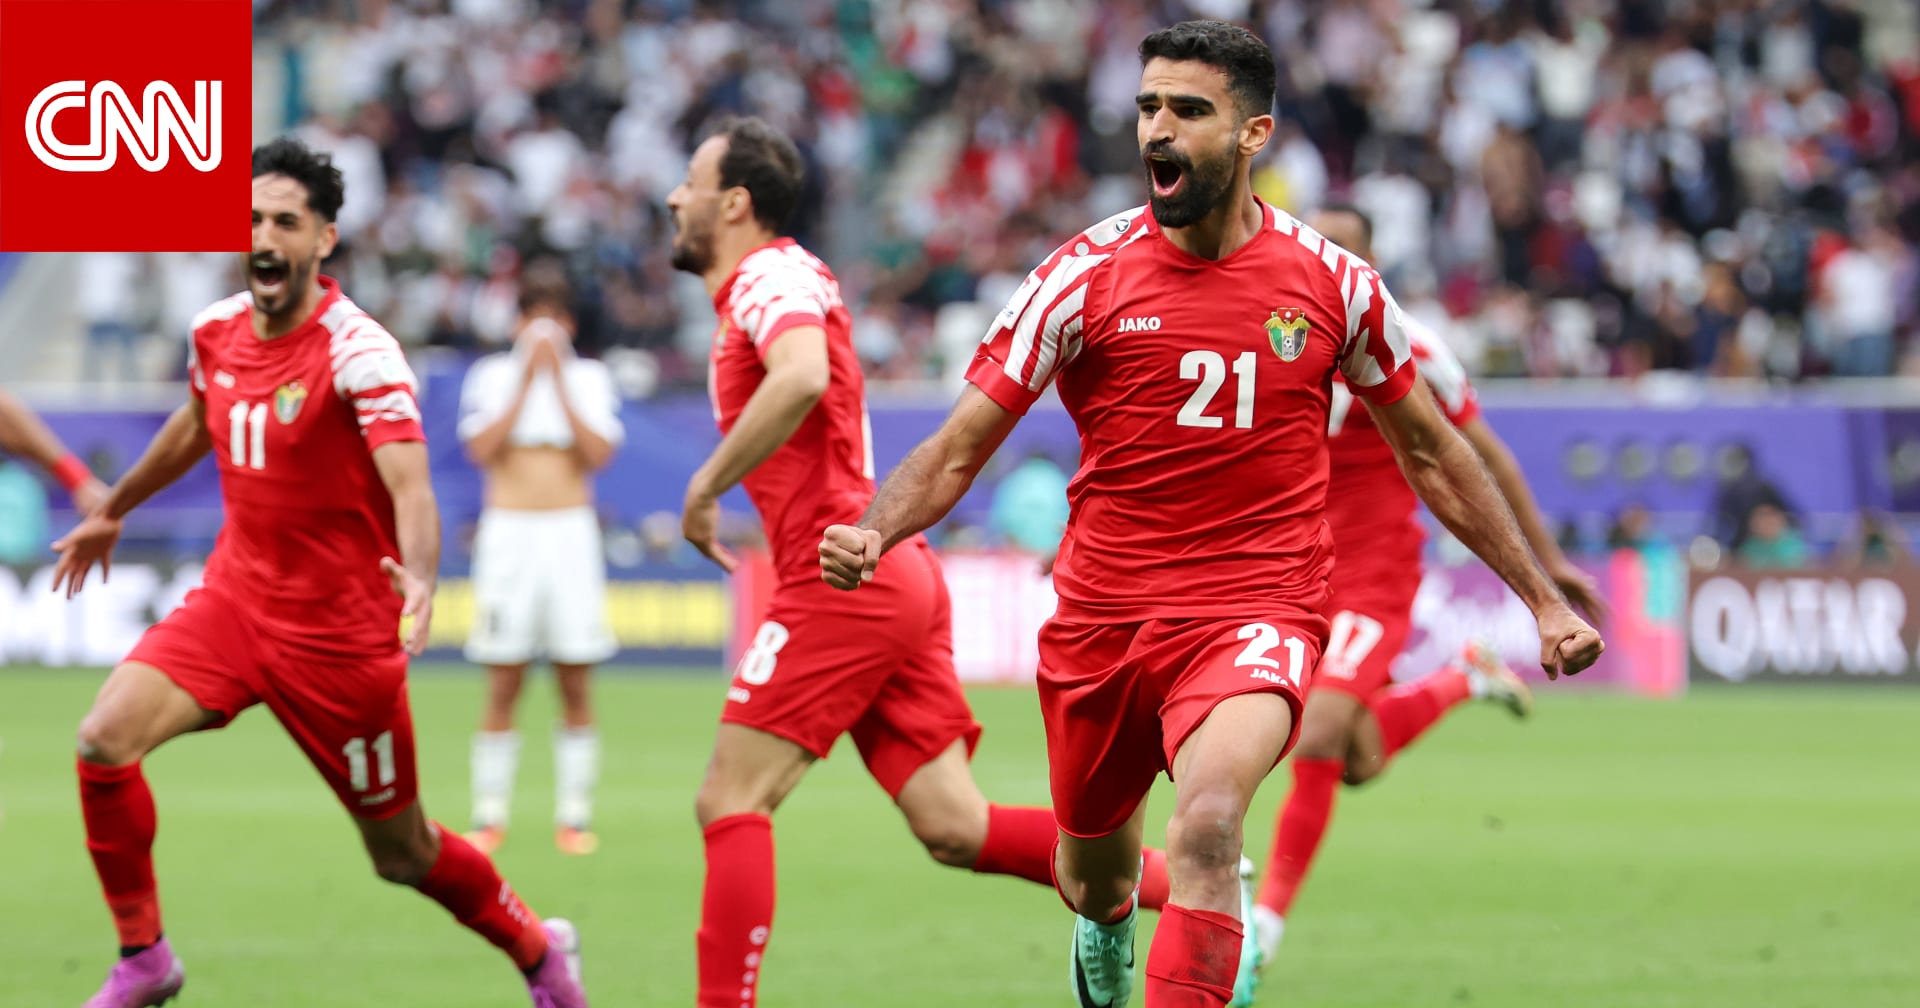 في مباراة جنونية.. الأردن يُقصي العراق من كأس آسيا في الوقت القاتل وتفاعل على احتفالية "المنسف"